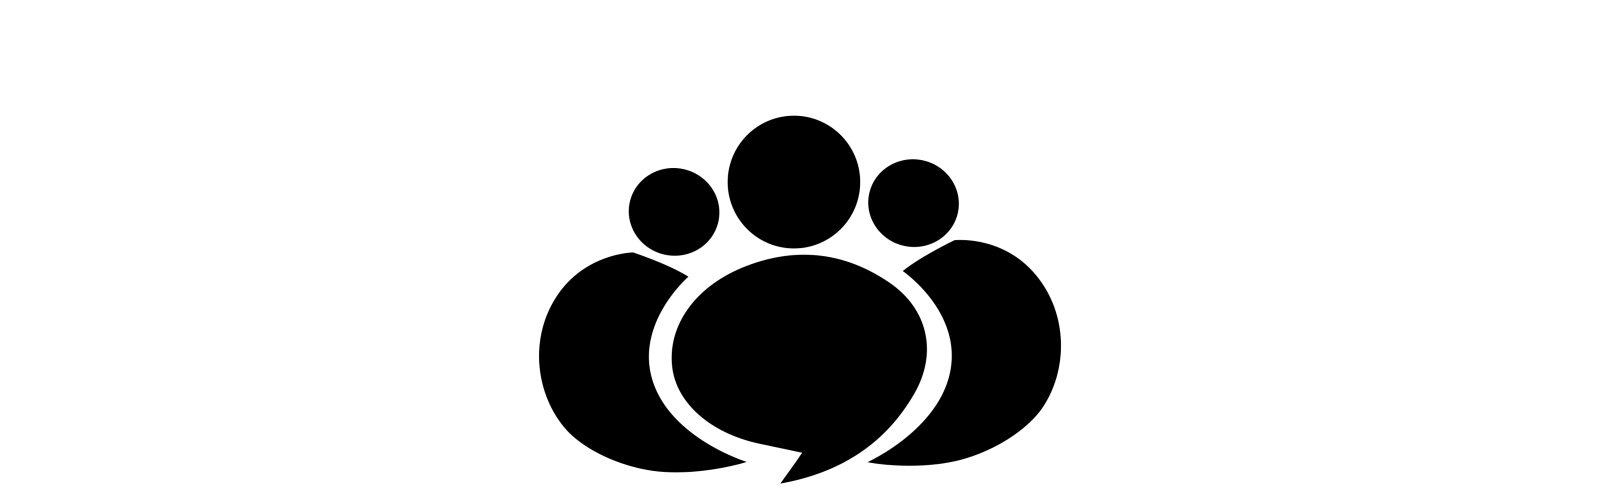 Logo JOBka